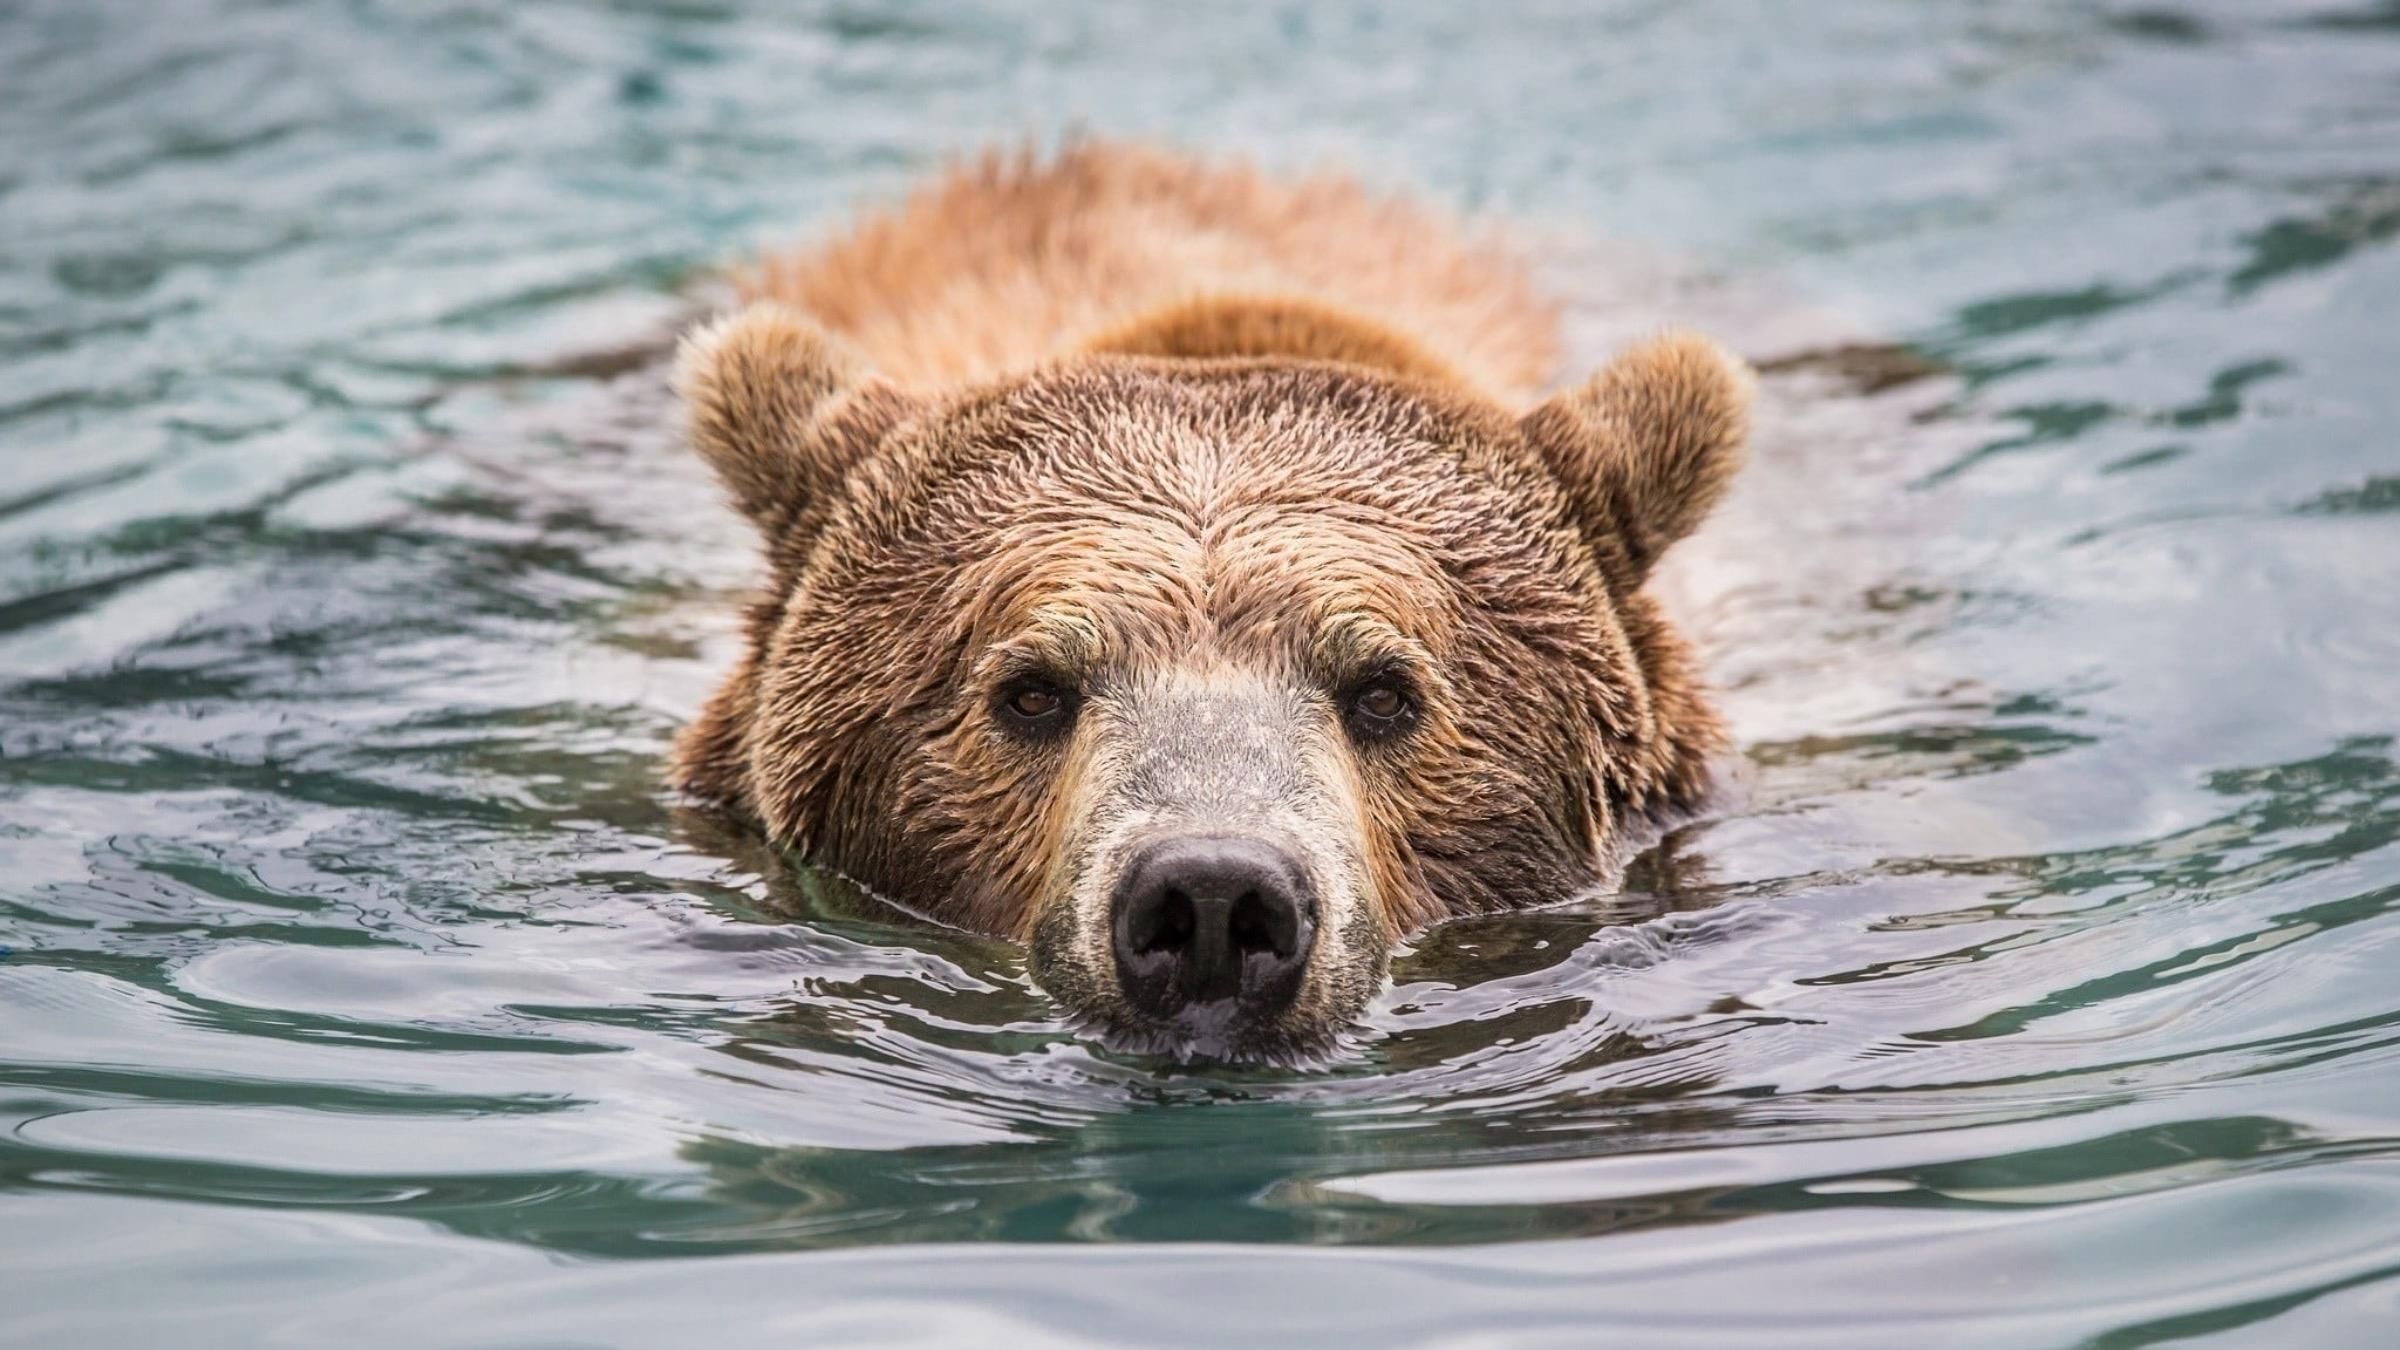 Медведь застрял в пластиковой банке: видео спасения хищника из ловушки - Pets